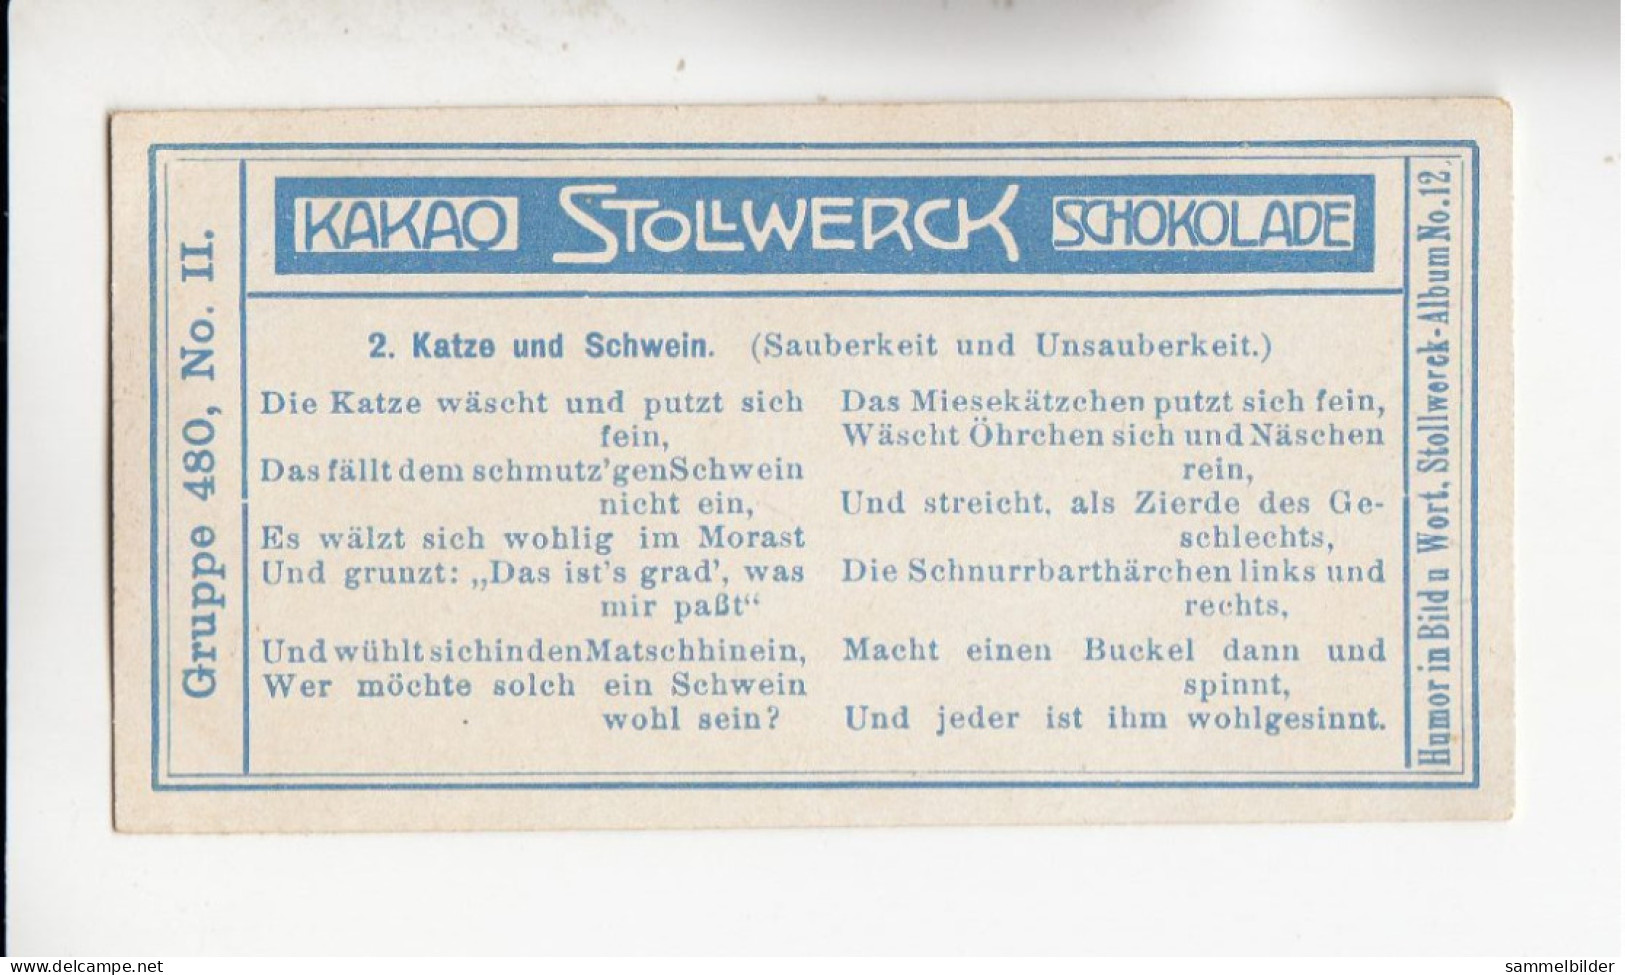 Stollwerck Album No 12 Die Tiere Katze Und Schwein  ( Sauberkeit Und Unsauberkeit  ) Grp 480 #2 Von 1911 - Stollwerck